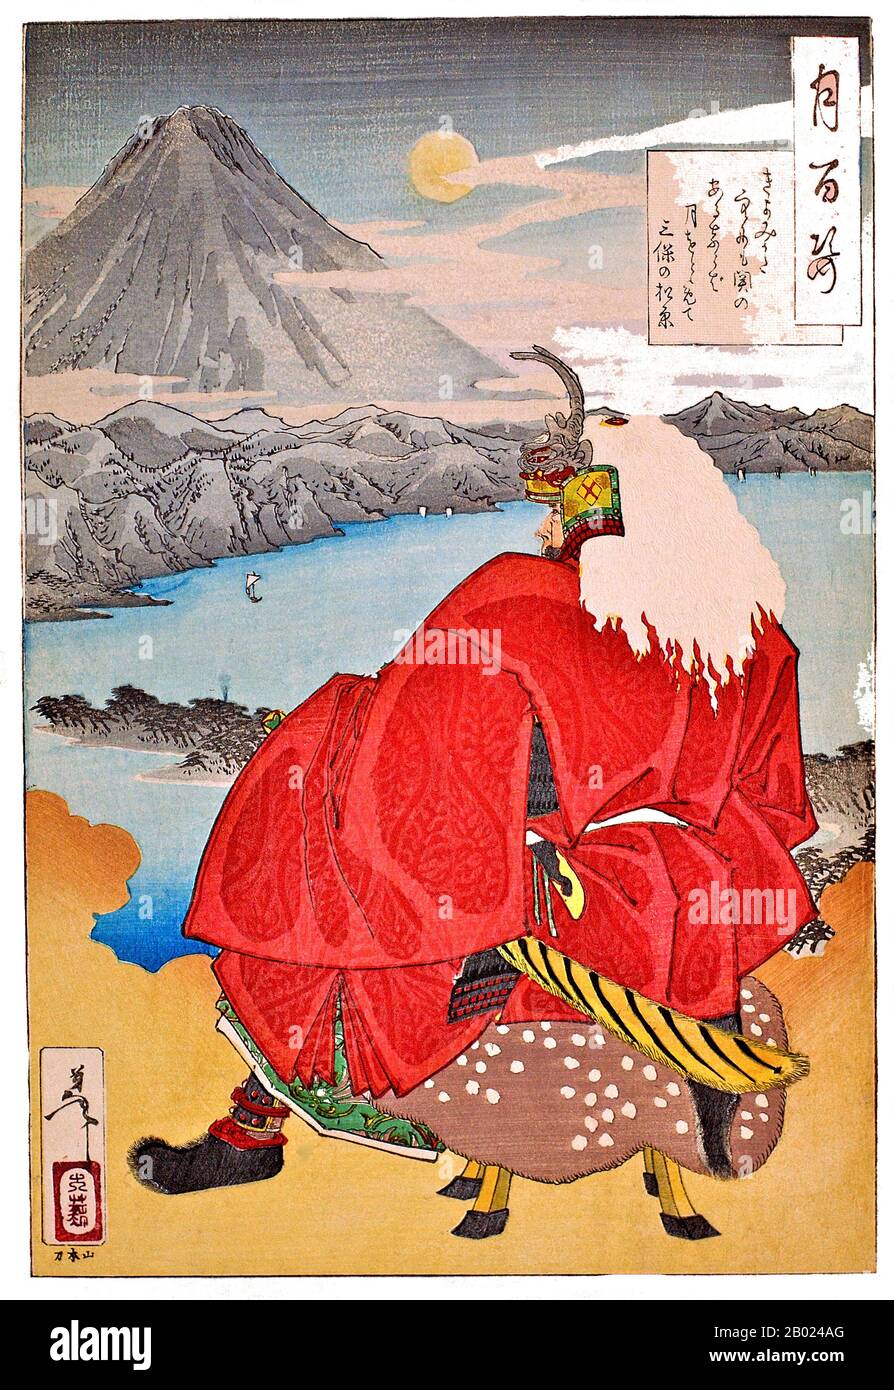 Tsukioka Yoshitoshi (月岡 芳年, 30 avril 1839 – 9 juin 1892, également nommé Tiso Yoshitoshi 大蘇 芳年) était un artiste japonais. Il est largement reconnu comme le dernier grand maître d'Ukiyo-e, un type d'impression japonaise de blocs de bois. Il est en outre considéré comme l'un des plus grands innovateurs de la forme. Sa carrière a duré deux périodes – les dernières années de la période Edo Japon, et les premières années du Japon moderne après la restauration Meiji. Comme beaucoup de Japonais, Yoshitoshi s'intéressait à de nouvelles choses du reste du monde, mais avec le temps, il s'inquiétait de plus en plus de la perte de nombreux aspects du traditionnel Banque D'Images